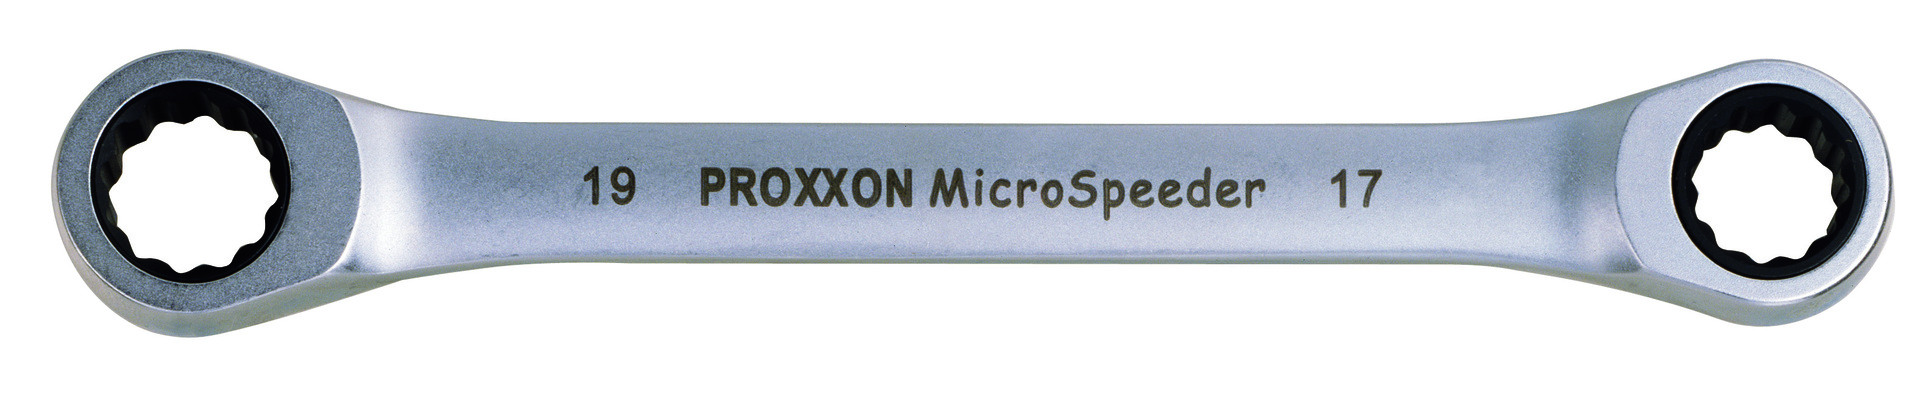 Proxxon Micro-Speeder Ratschenschlüssel 10x11mm